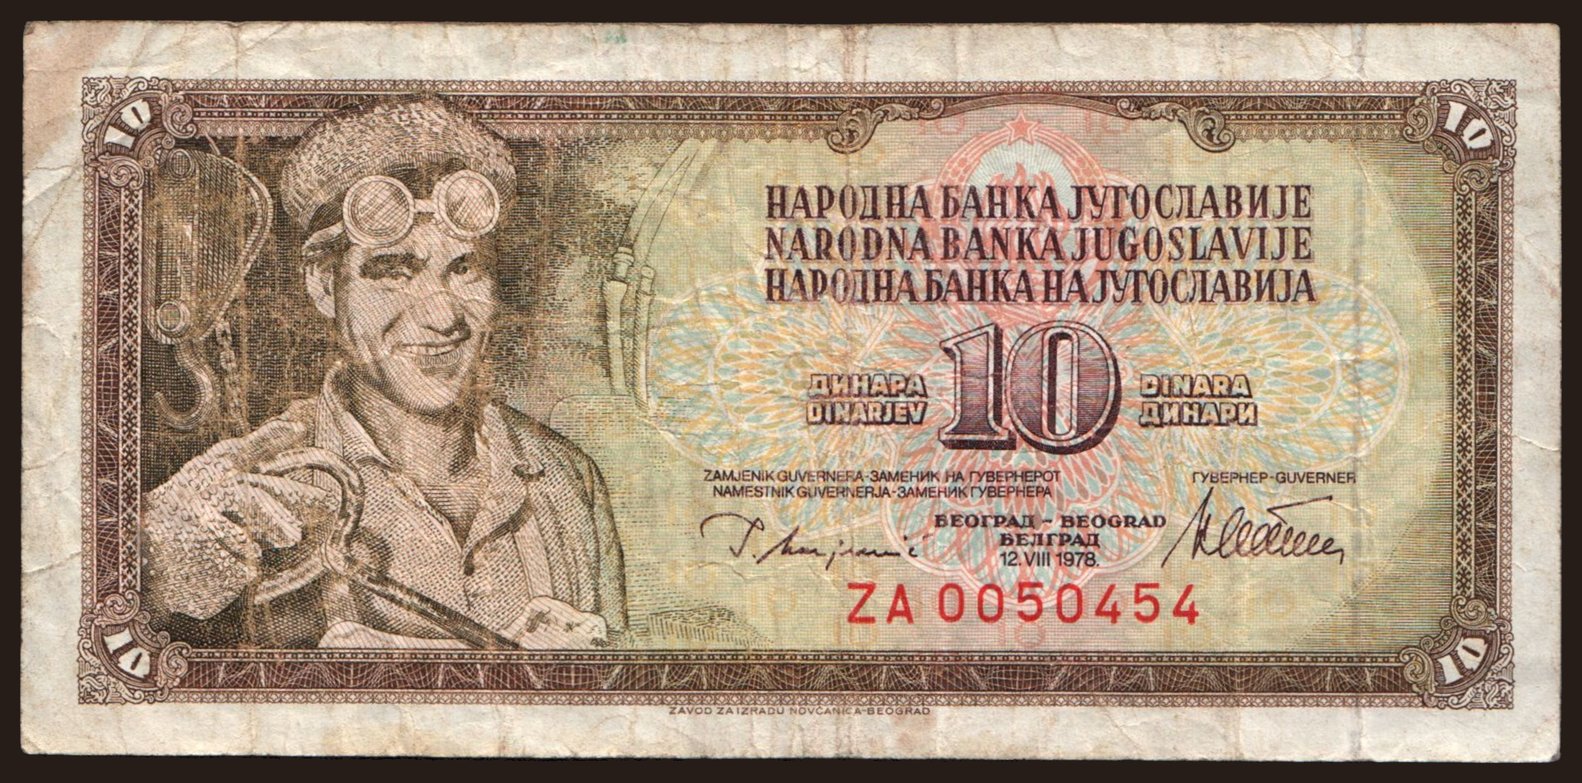 10 dinara, 1978